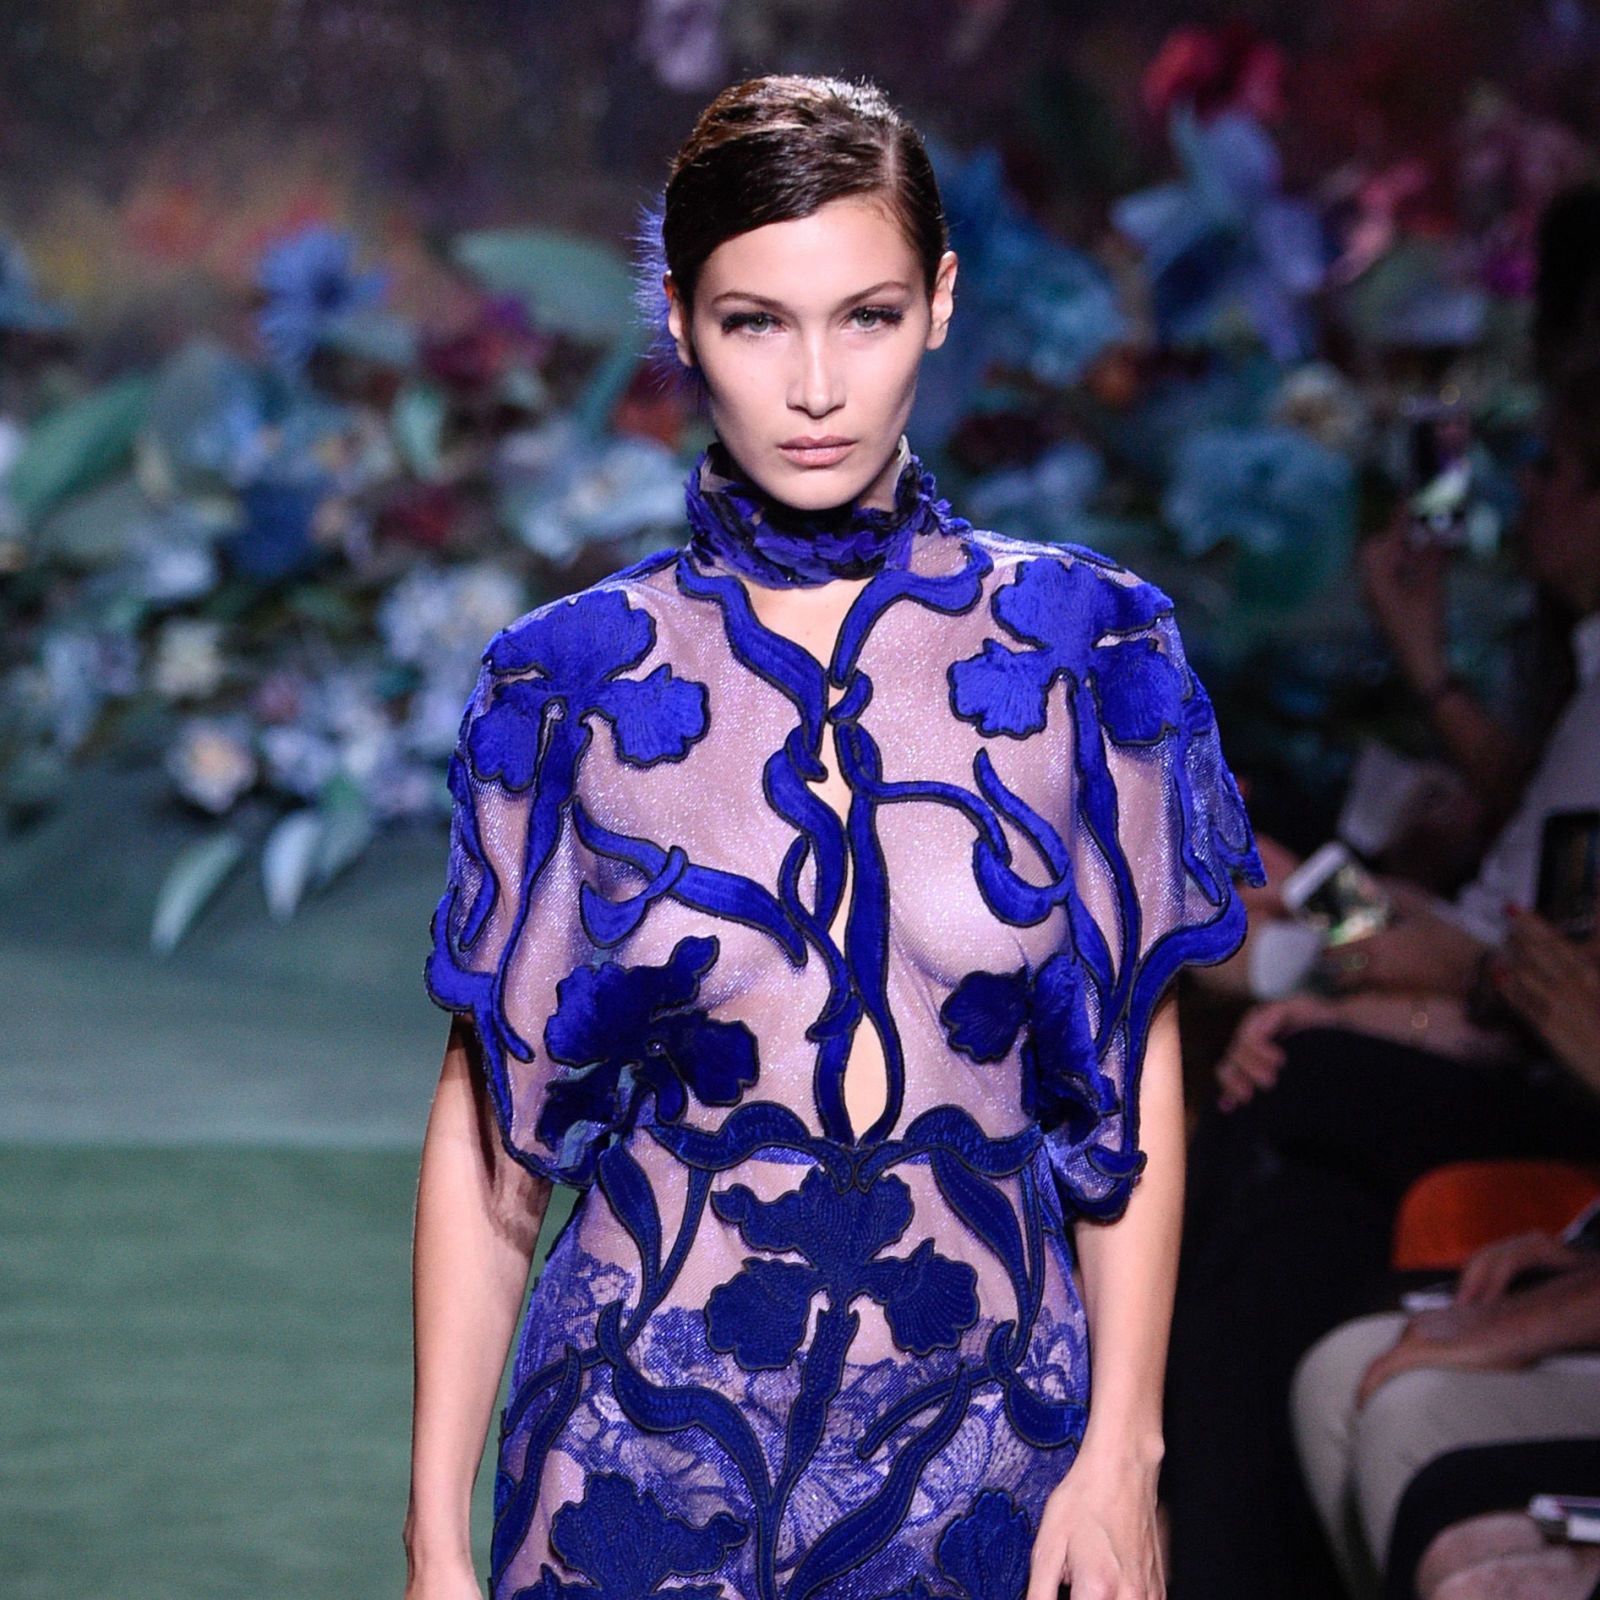 Bella Hadid Wears Sheer Dress During Paris Fashion Week: Photos